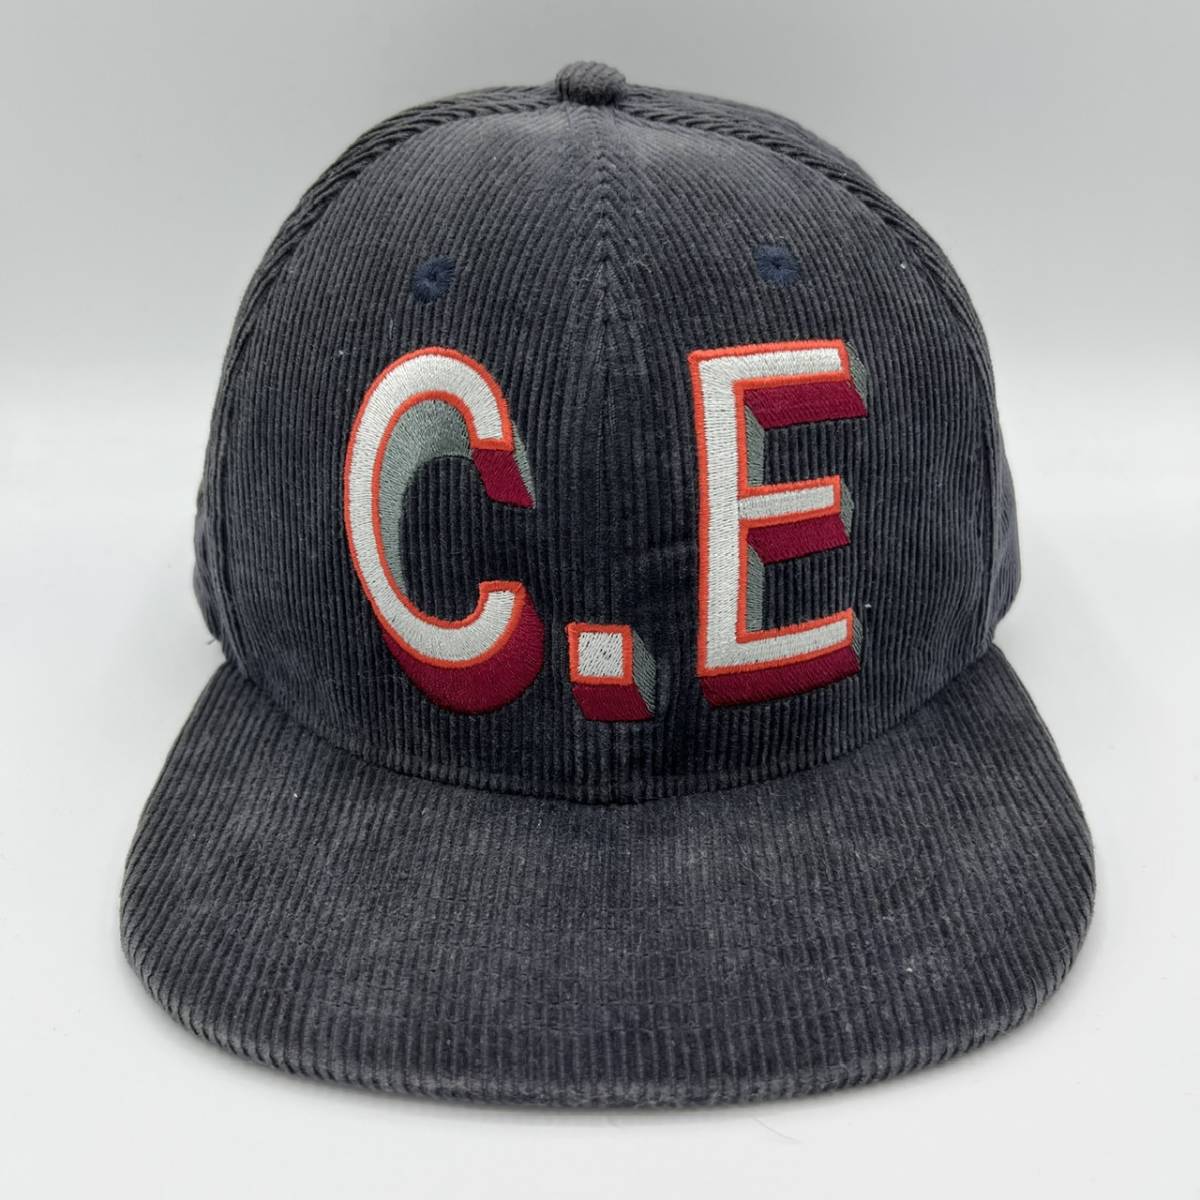 C.E シーイー CAV EMPT ロゴ コーデュロイ キャップ 帽子 グレー